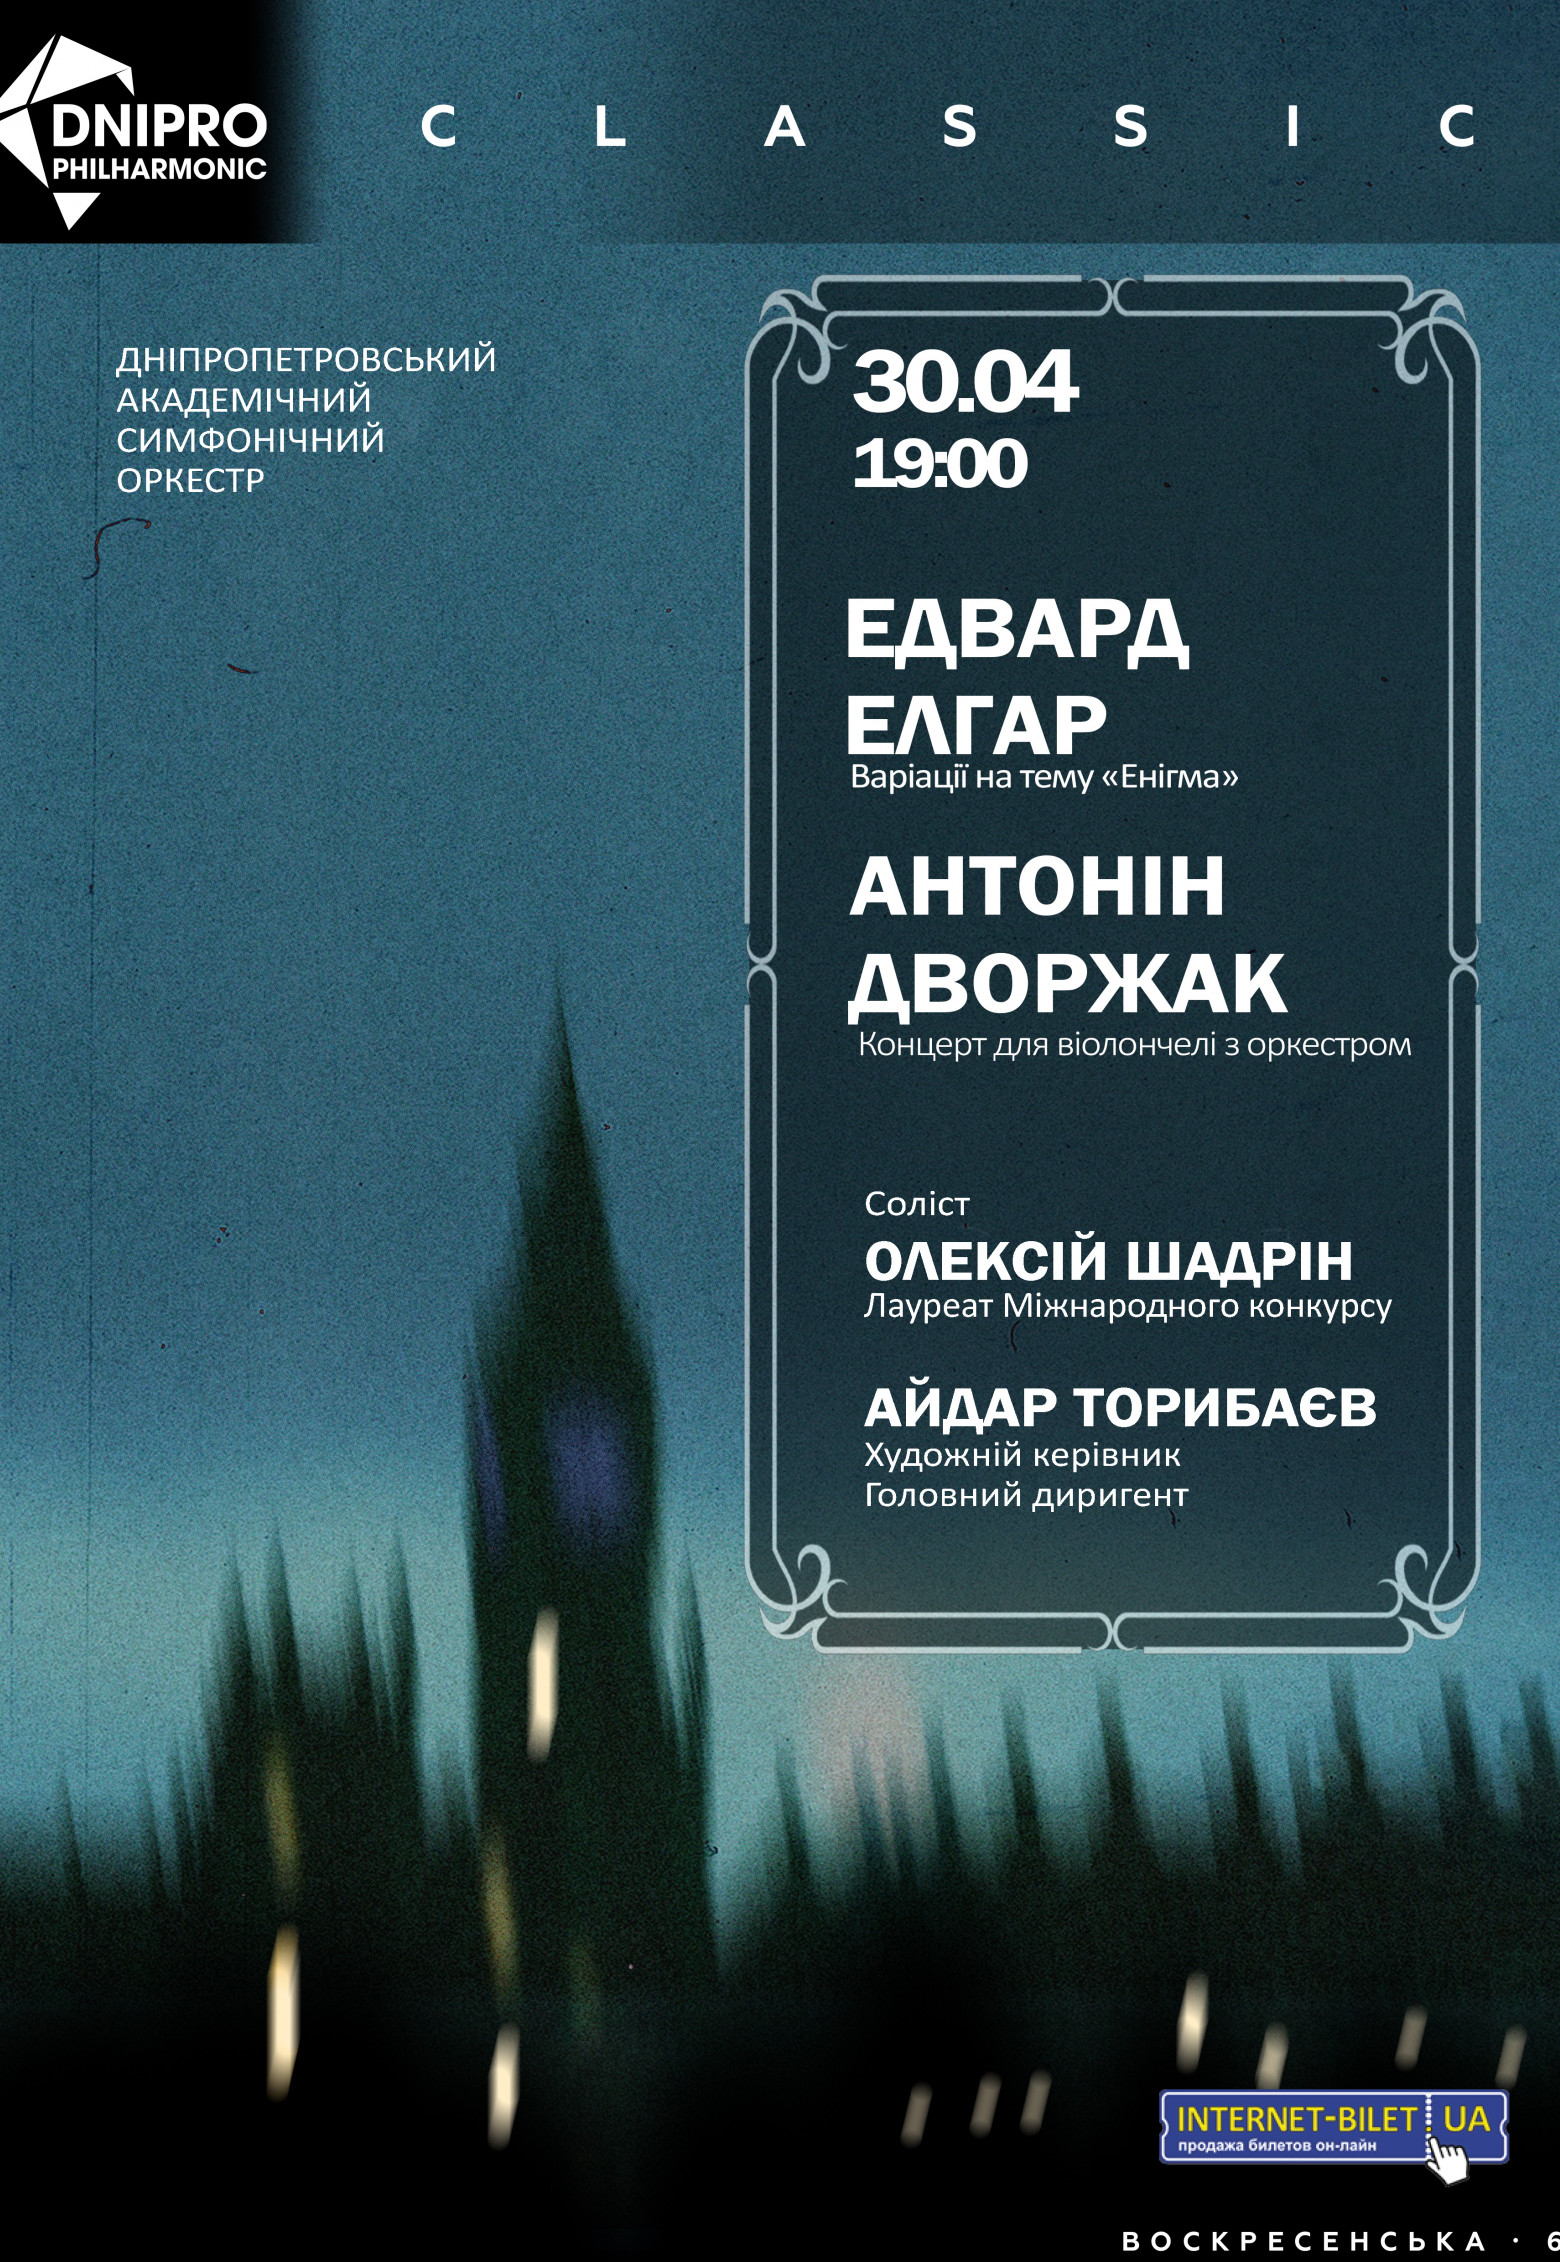 Концерт симфонического оркестра Днепр, 30.04.2021, купить билеты. Афиша Днепра